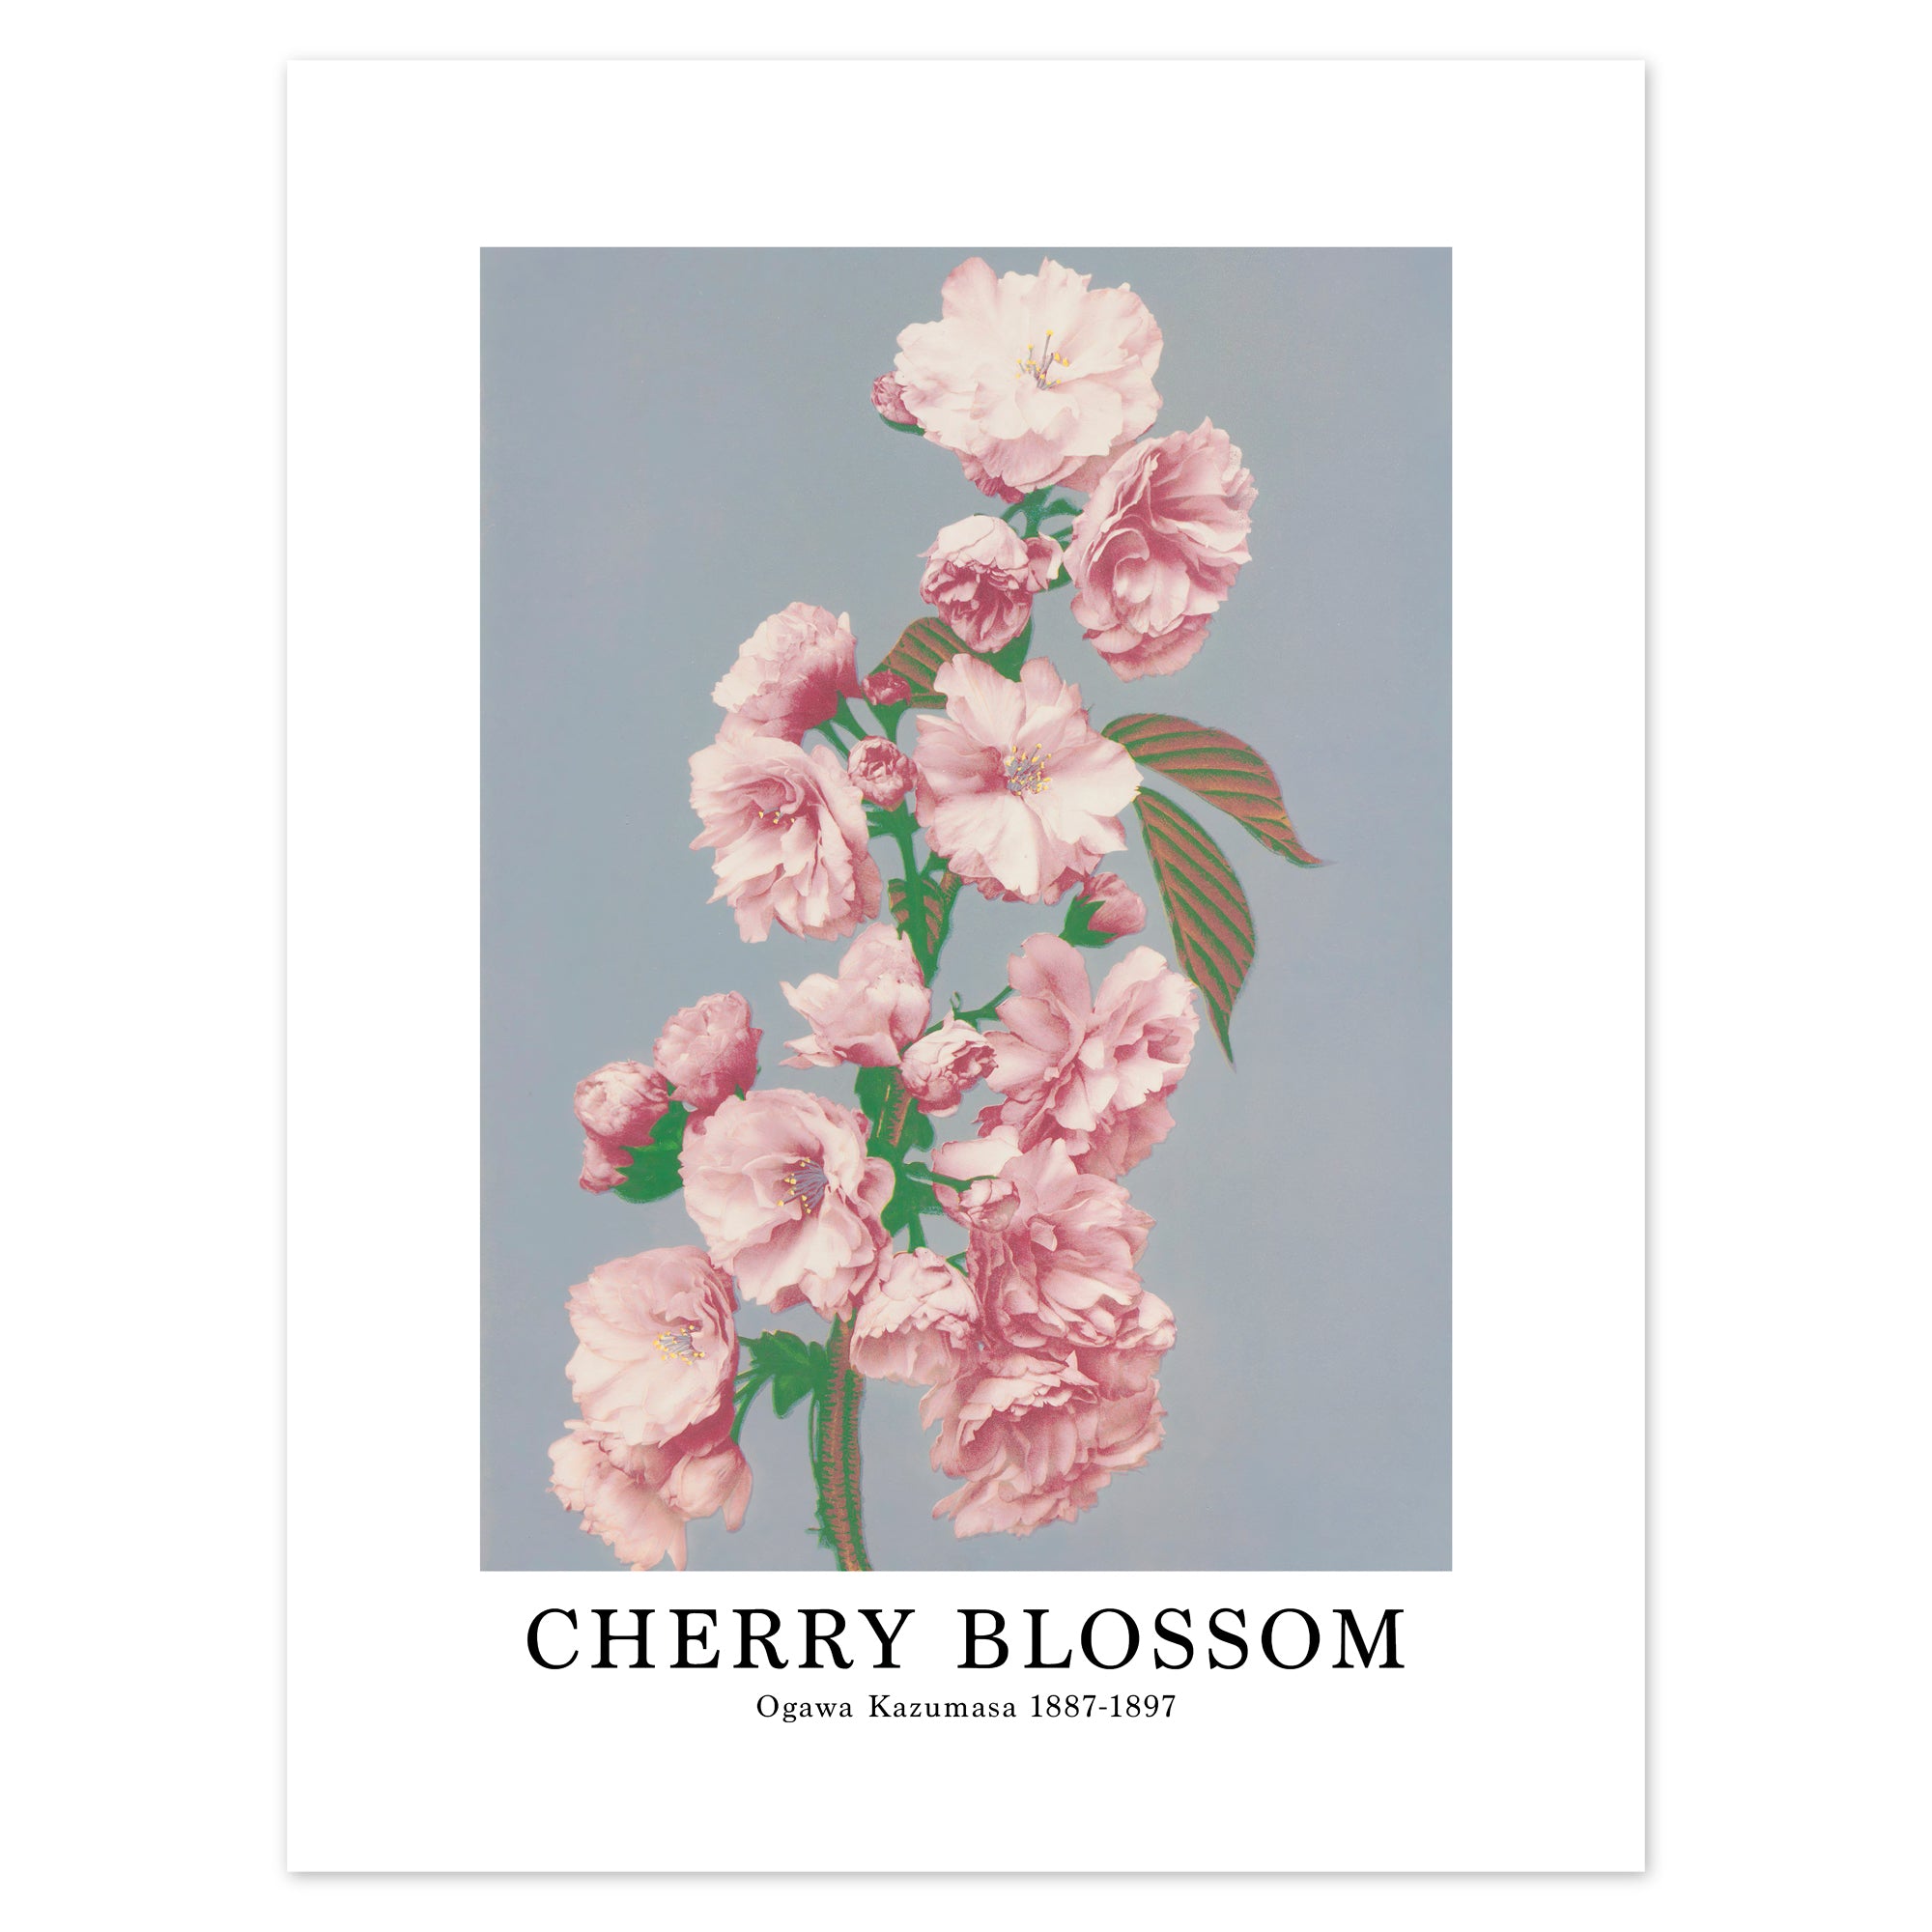 Ogawa Kazumasa Poster - Cherry Blossom